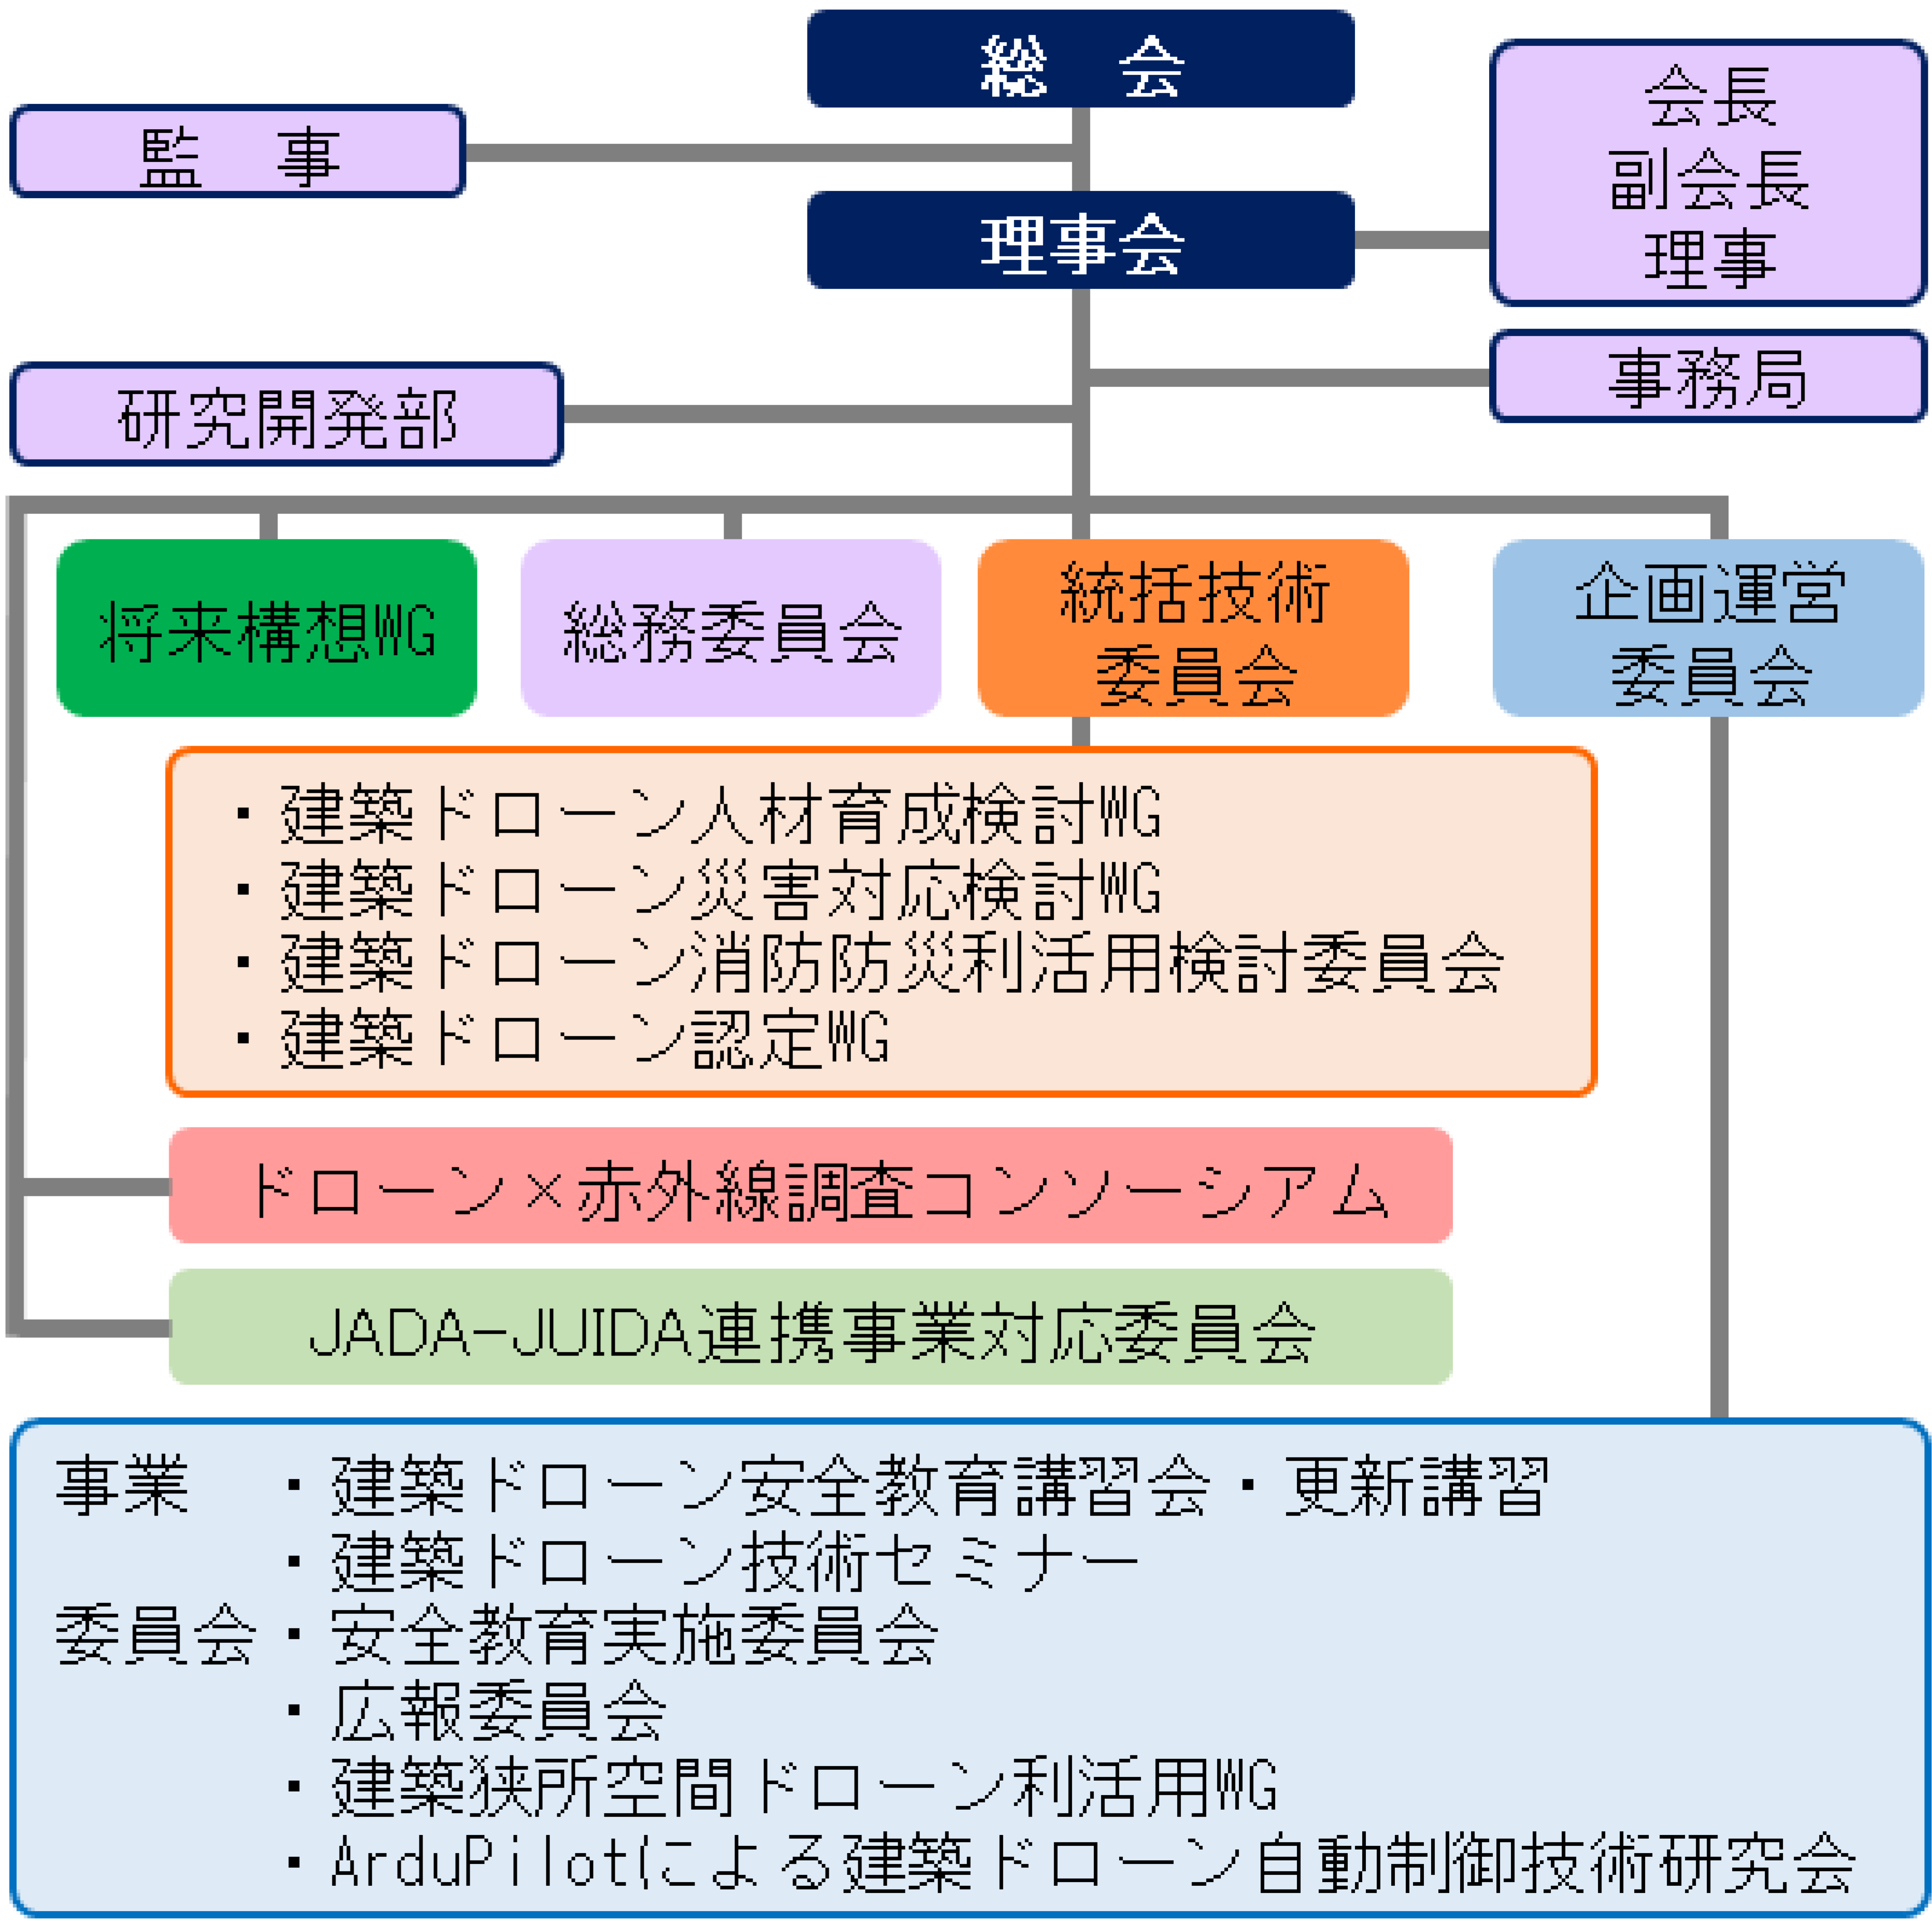 日本建築ドローン協会組織図